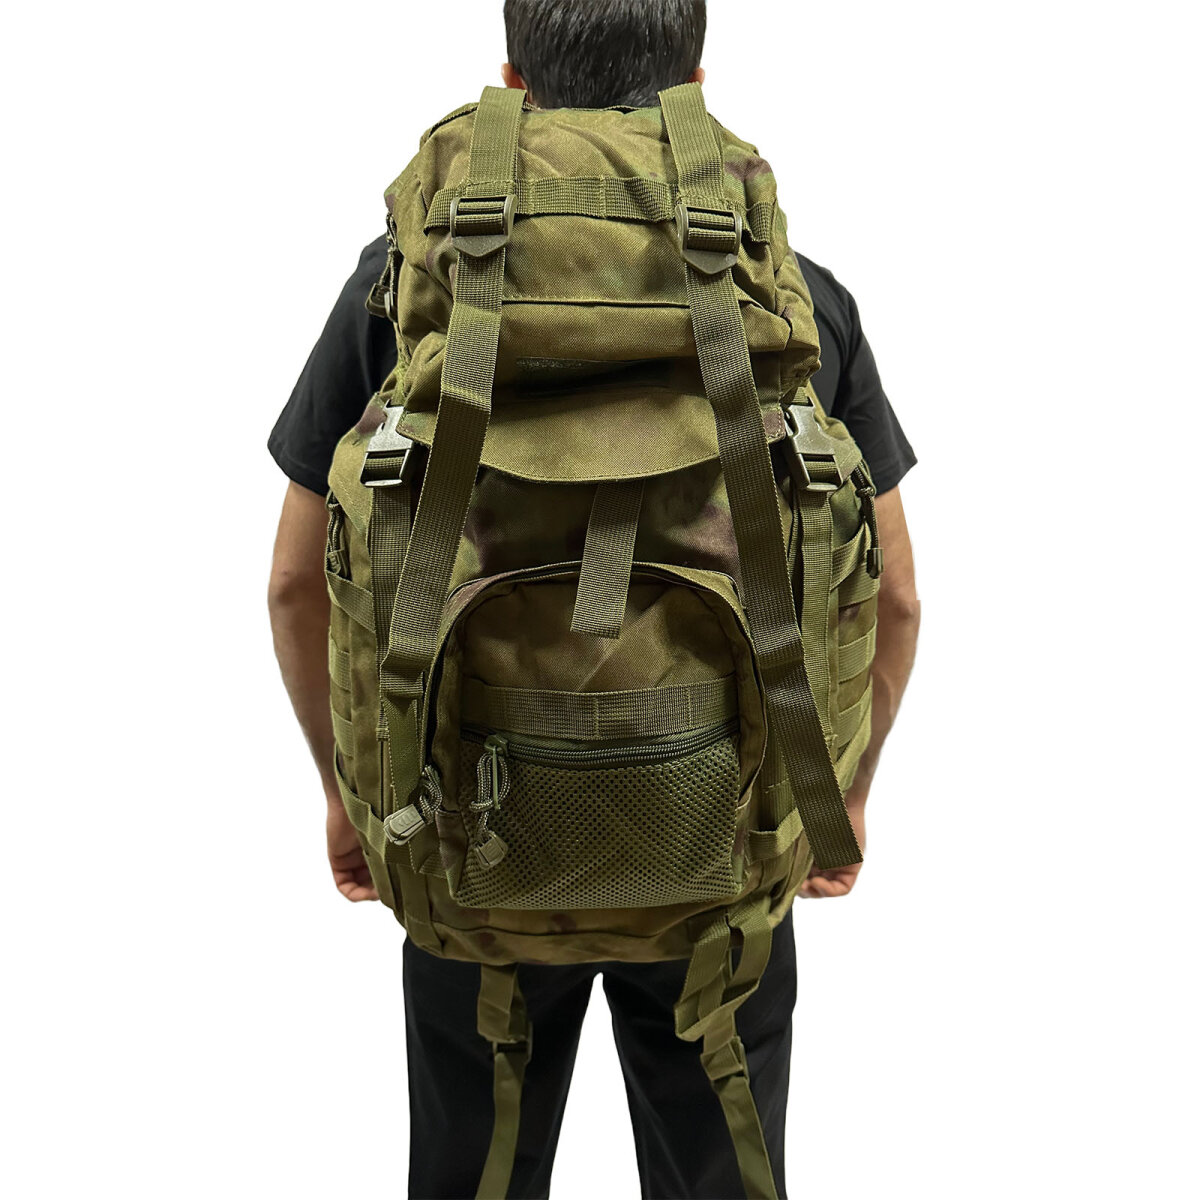 Армейский походный рюкзак полевой (защитный камуфляж) (35-50 л) (CH-063)